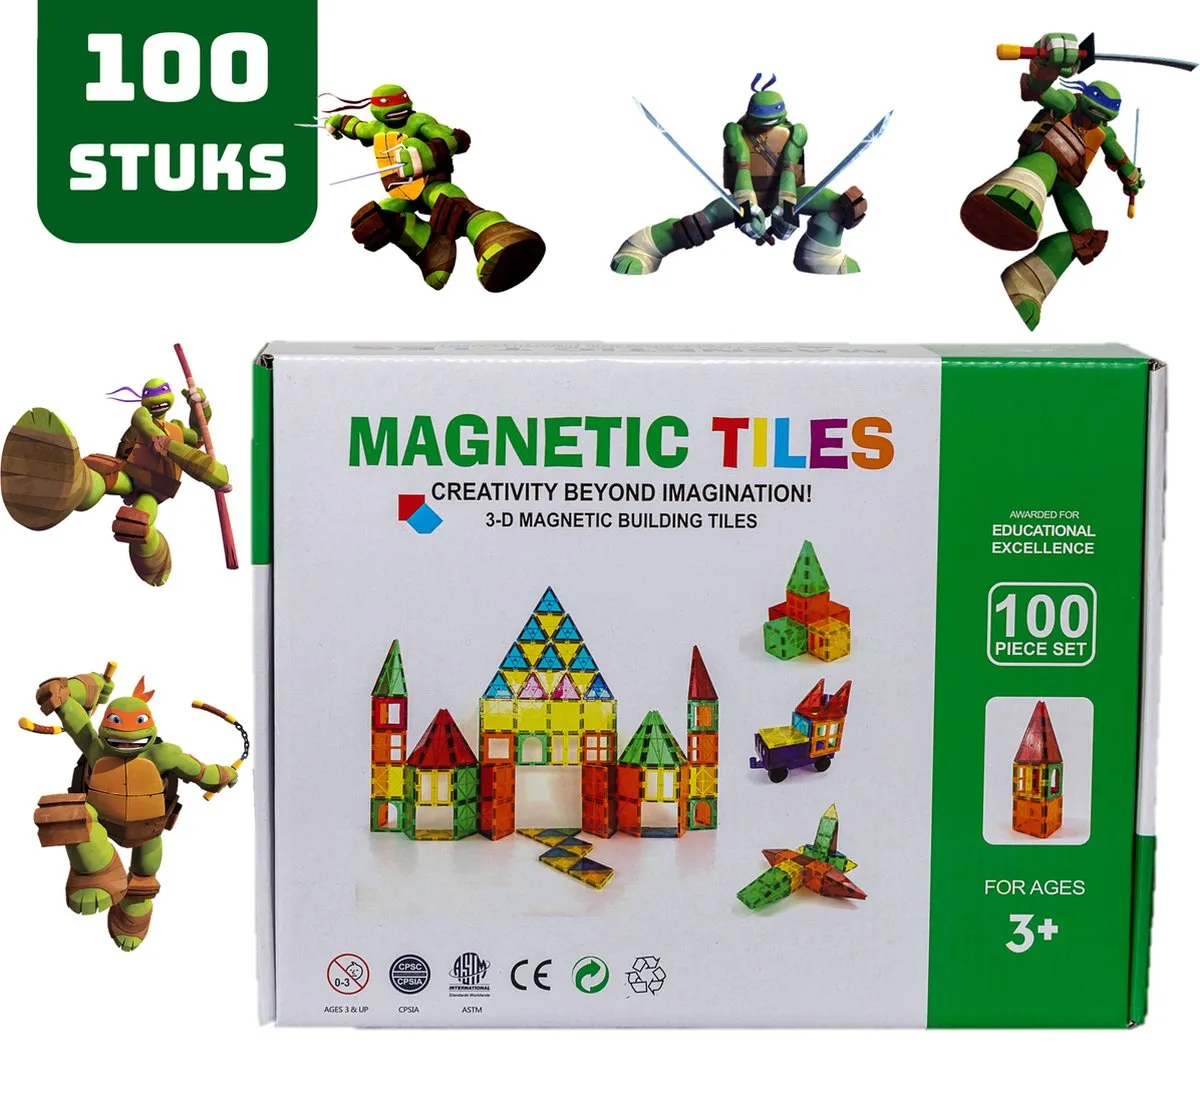 Magnetic Tiles - Magnaminds - Magna tiles - Magnetisch Speelgoed – 100 stuks - Constructie speelgoed - Magnetische tegels - Montessori speelgoed - Magnetic toys - Magnetische bouwstenen - Speelgoed 3-12 jaar - Magnetische Bouwblokken - Ninja turtles speelgoed